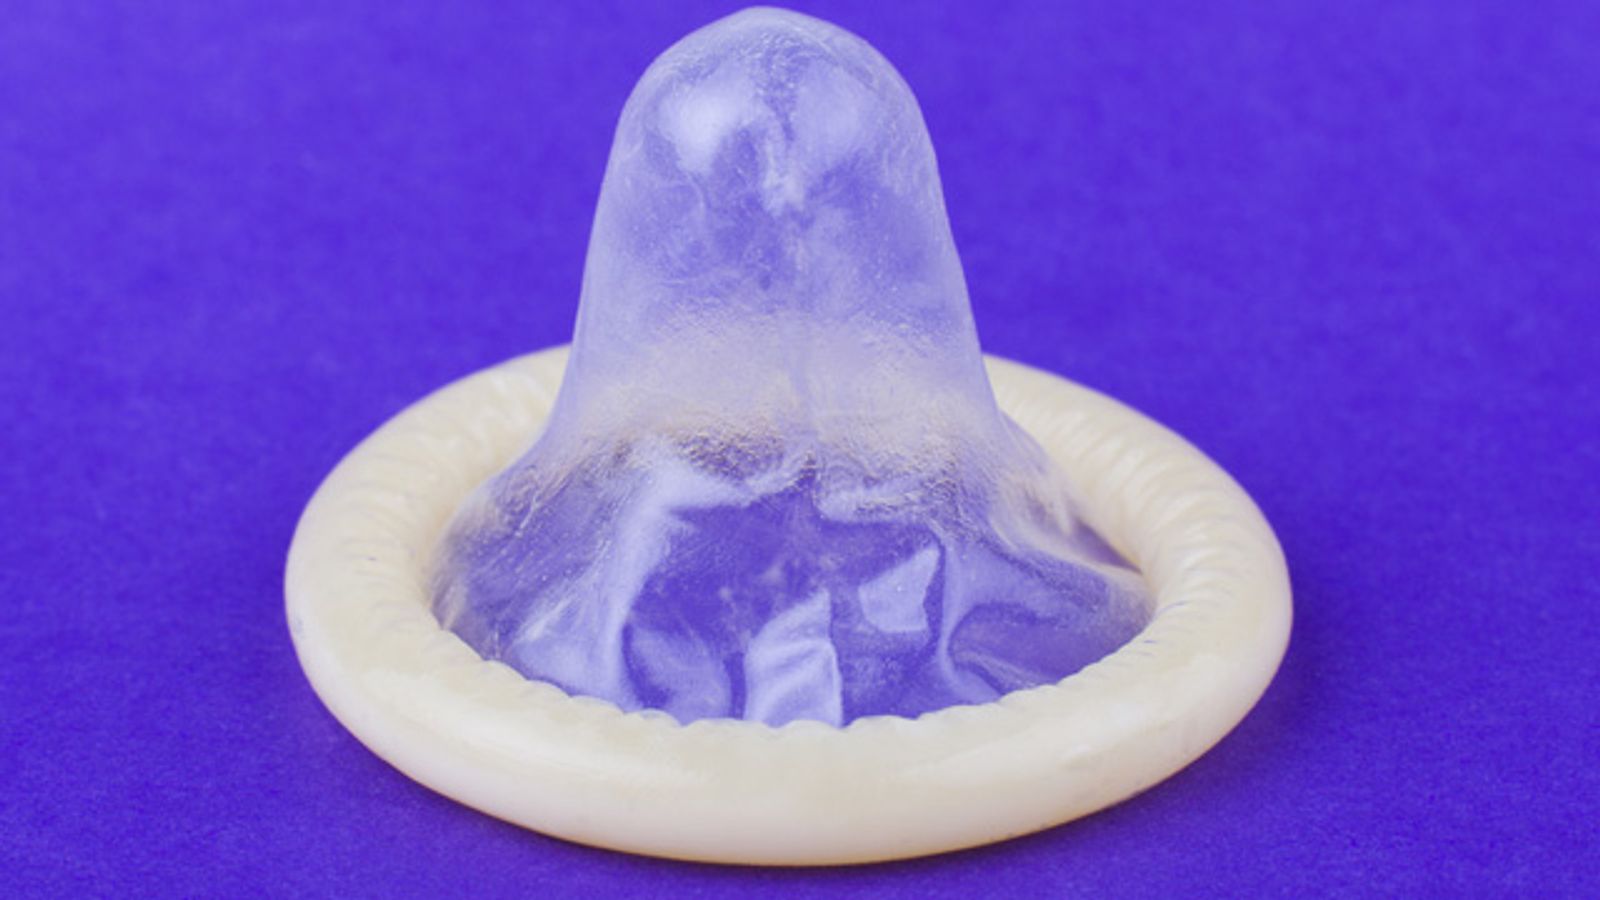 LA Daily News Publishes Muddled Editorial on Mandatory Condoms